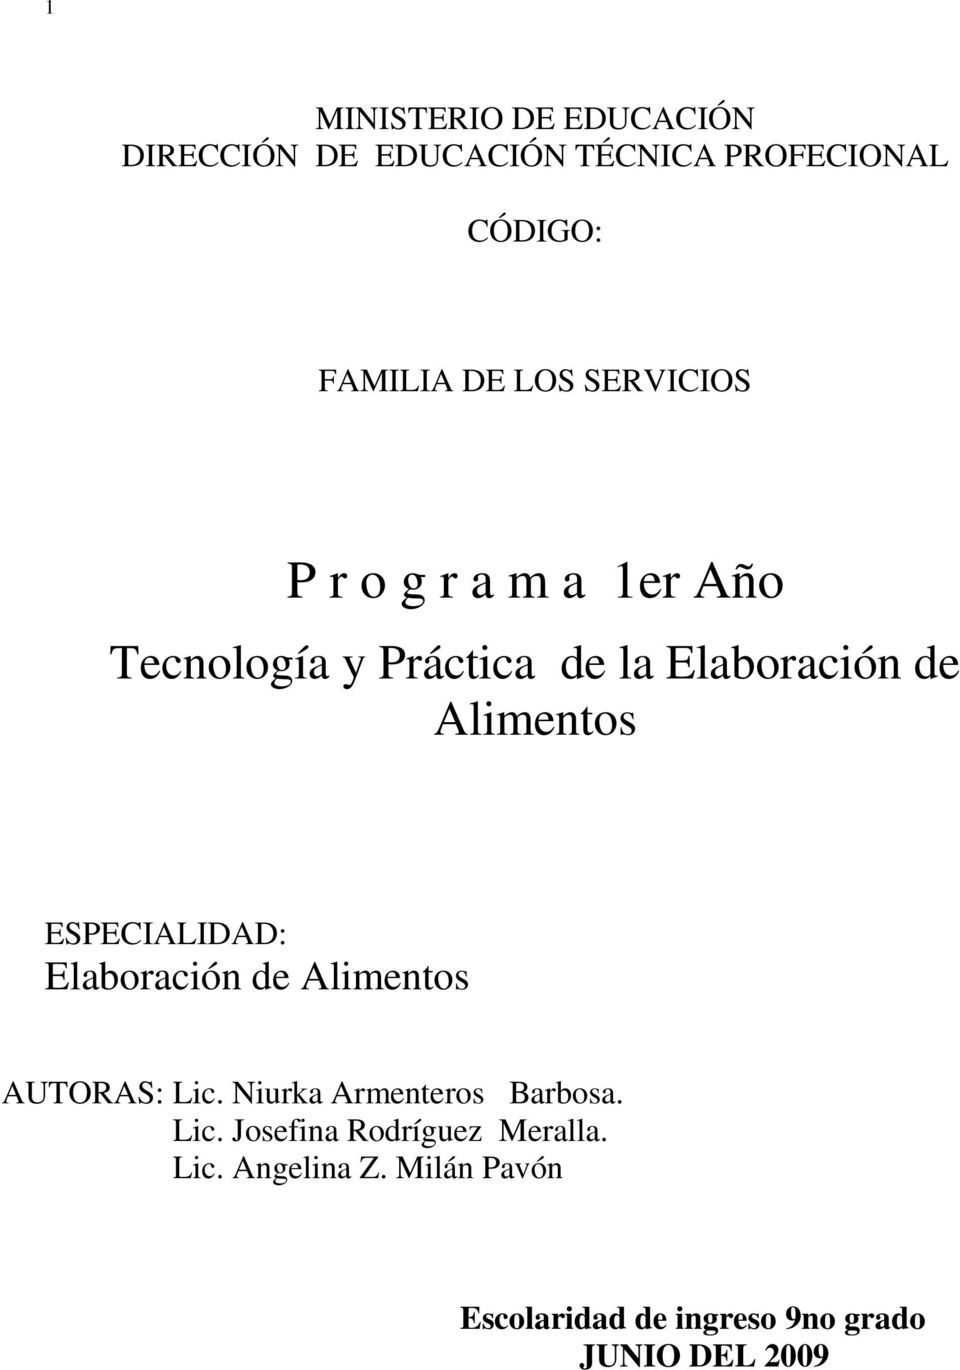 ESPECIALIDAD: Elaboración de Alimentos AUTORAS: Lic. Niurka Armenteros Barbosa. Lic. Josefina Rodríguez Meralla.